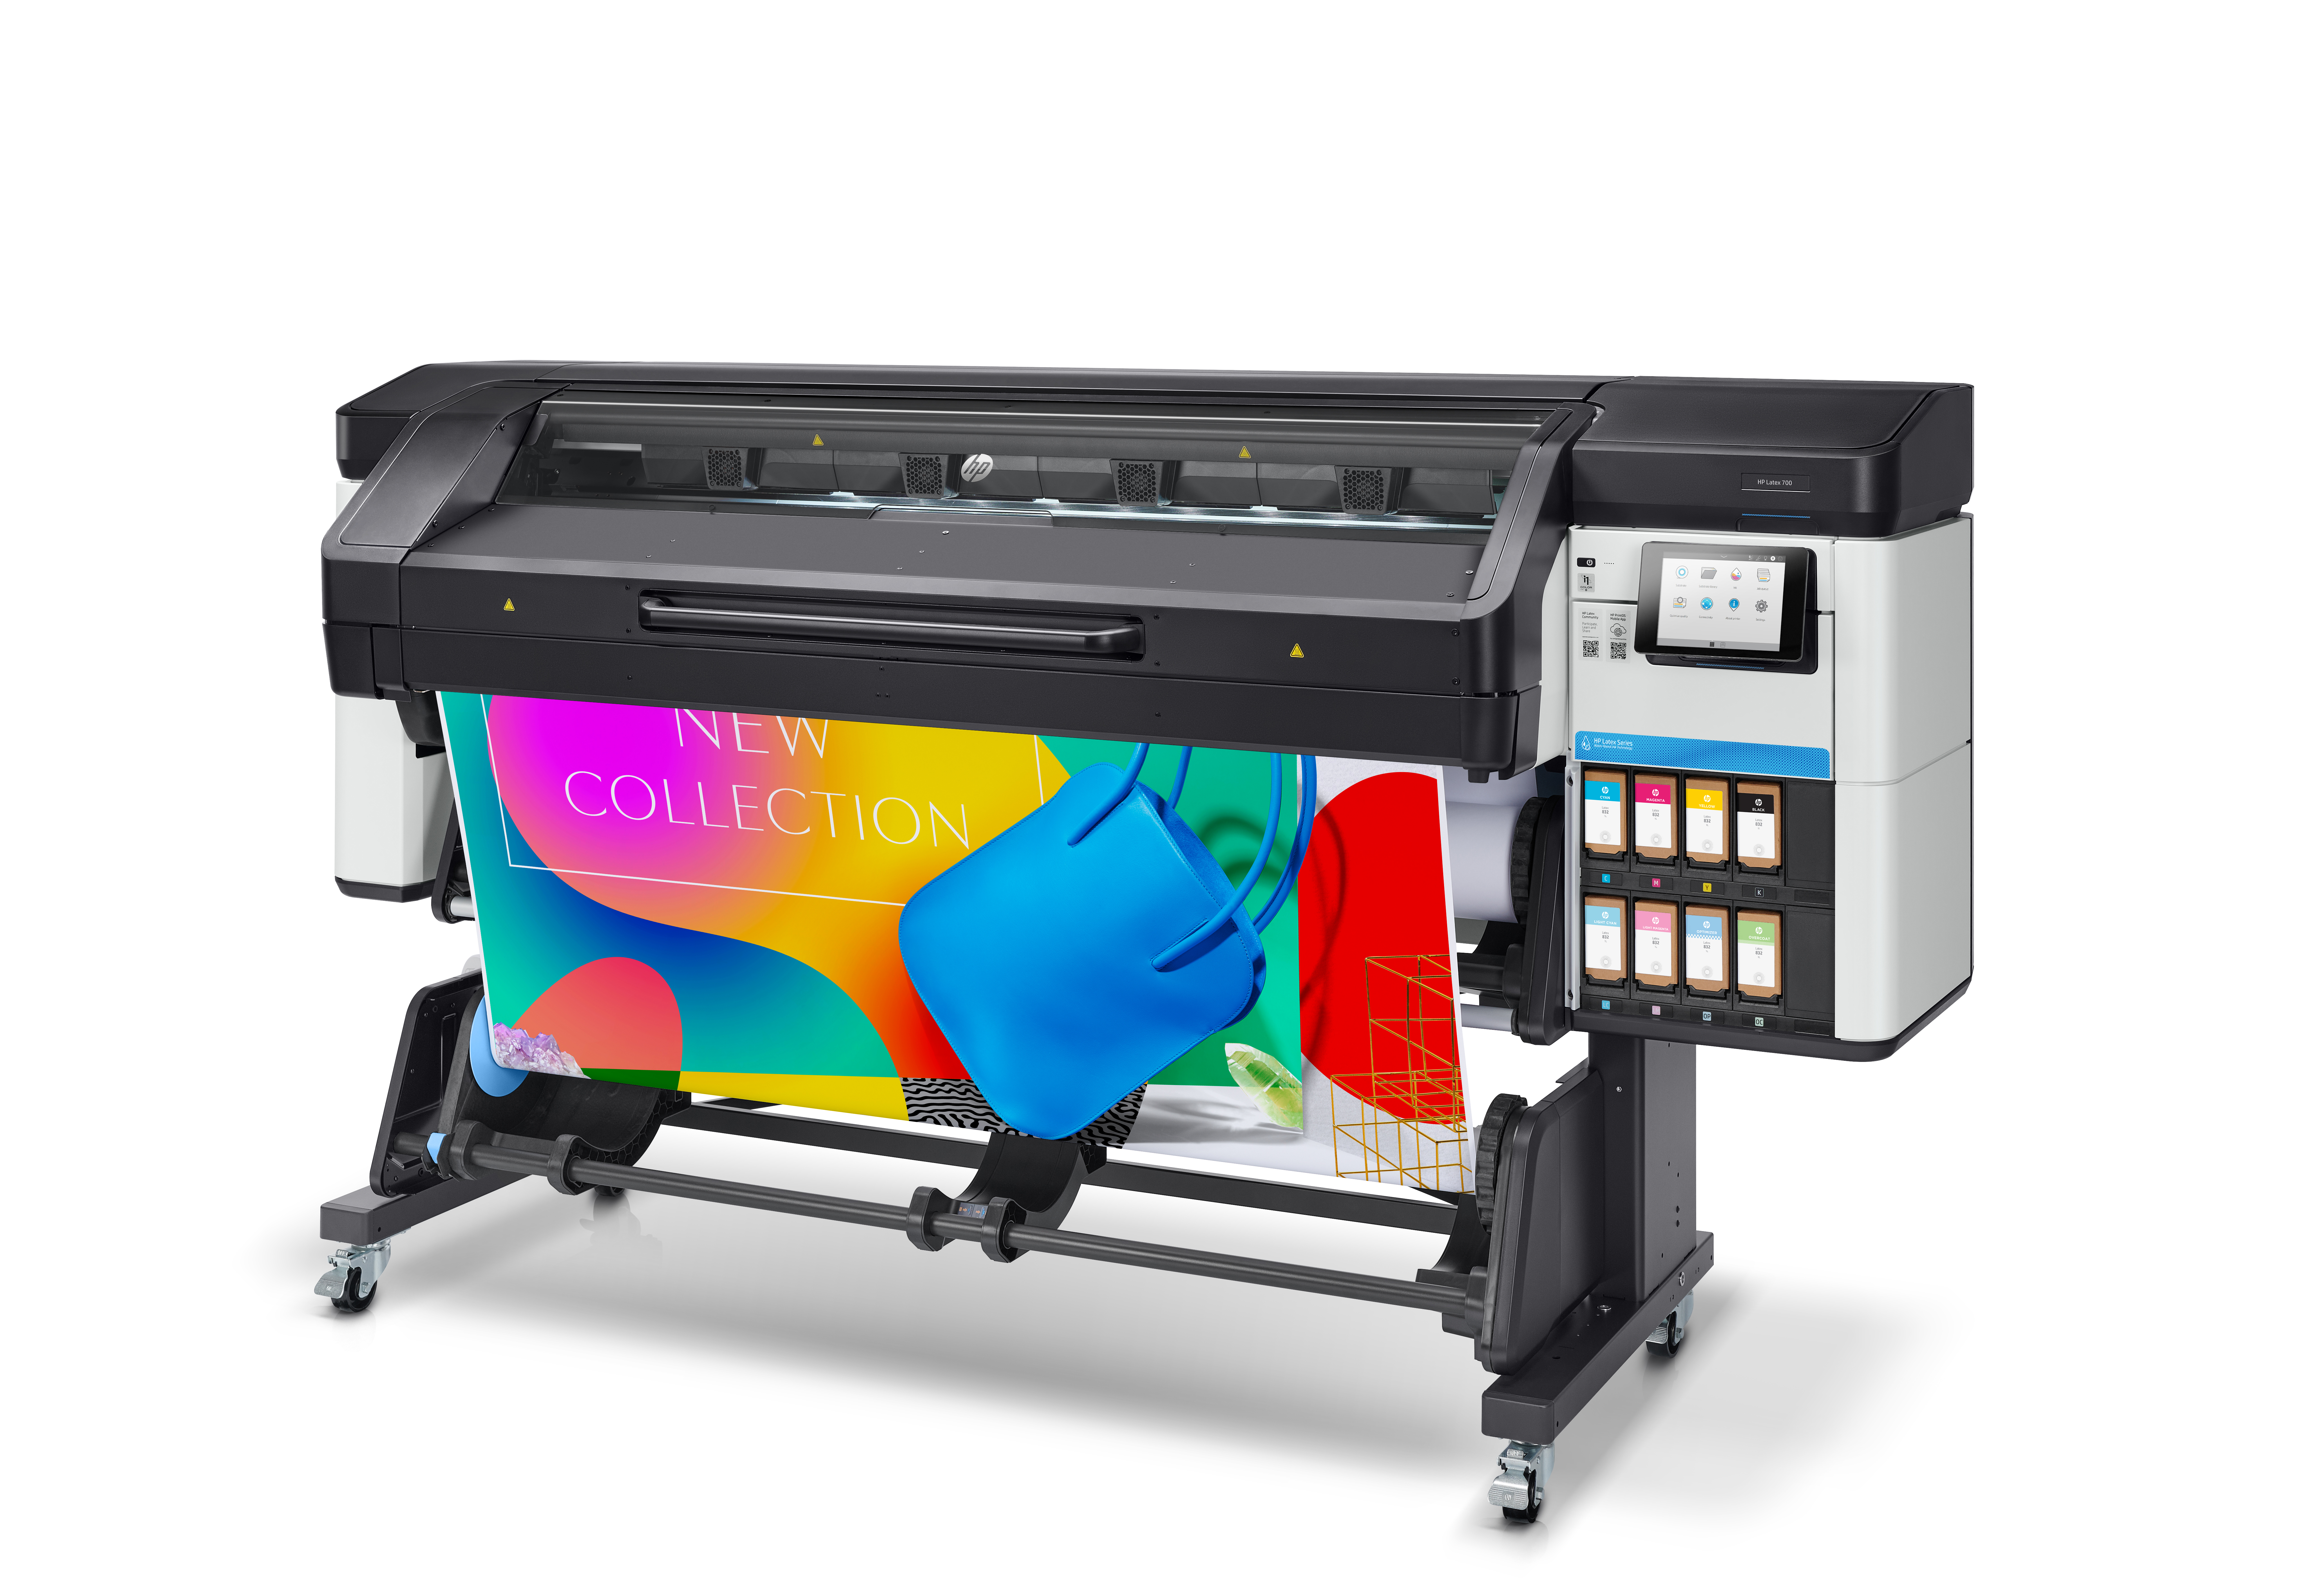 HP Latex 700 Printer